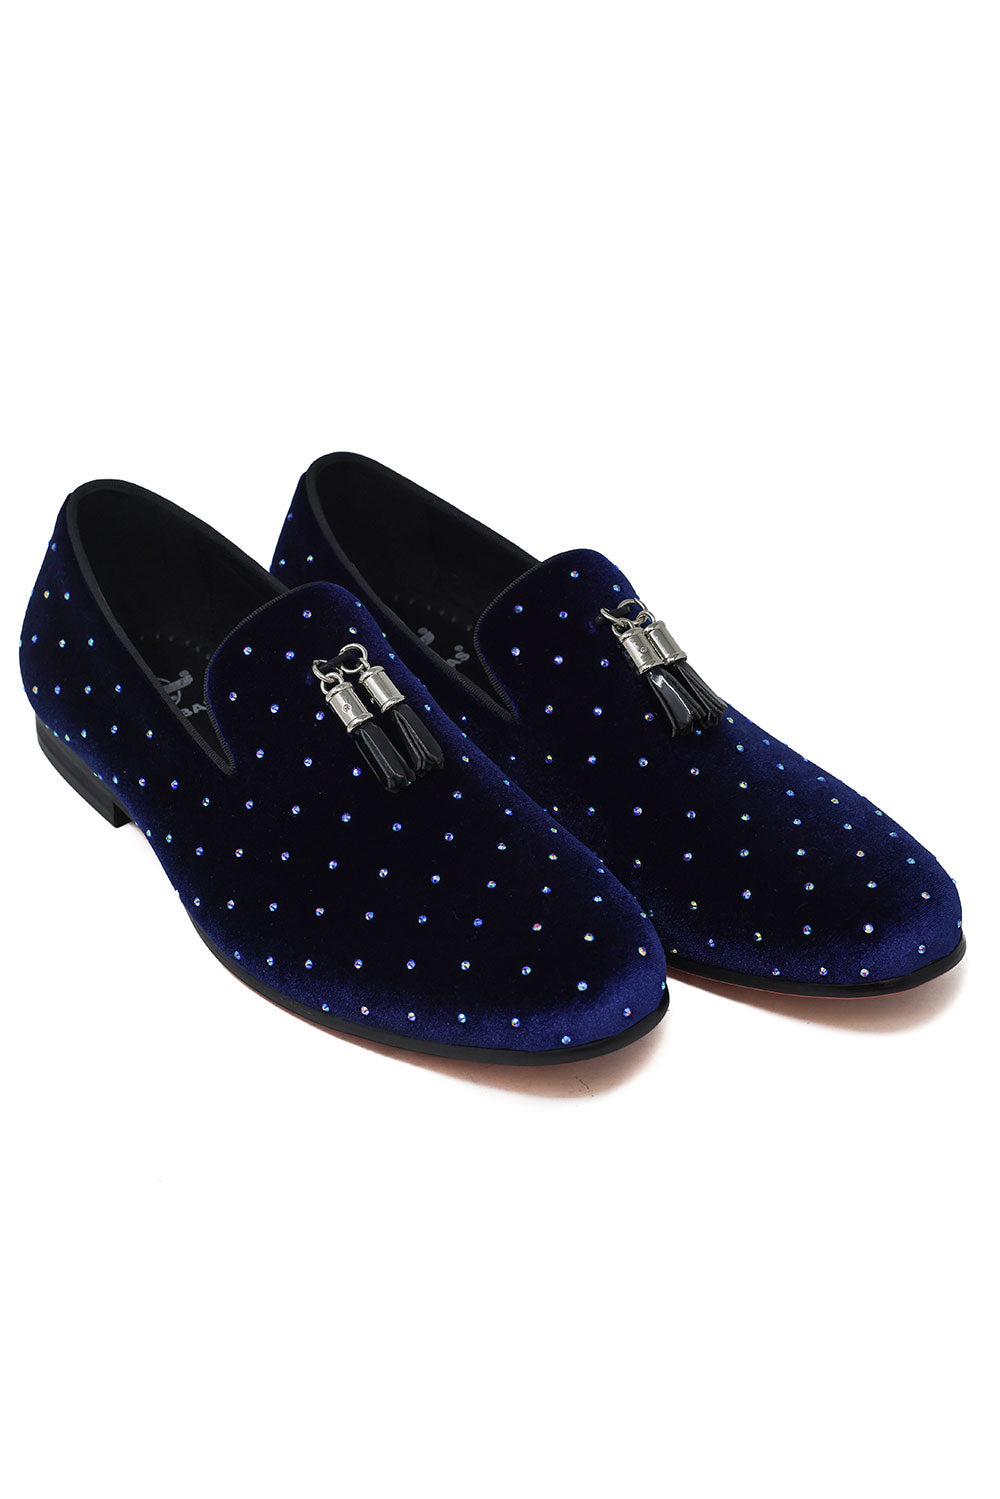 Barabas Men's Rhinestone Velvet Tassel Loafer Dress Shoes SH3020 Royal Blue